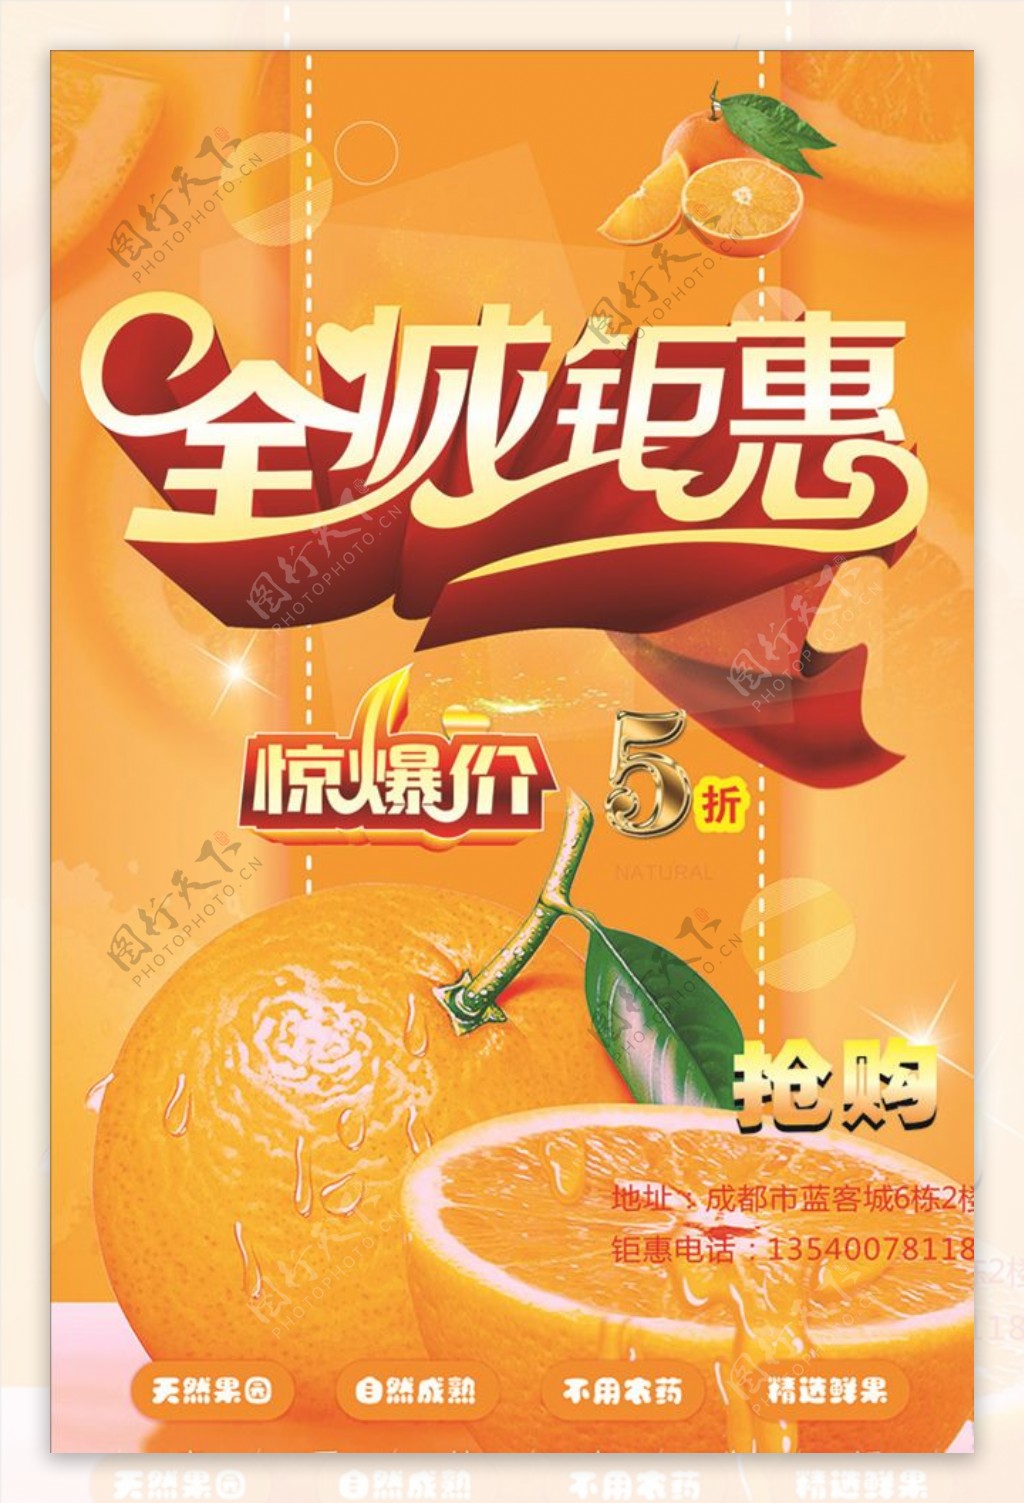 高端橙子全城钜惠海报